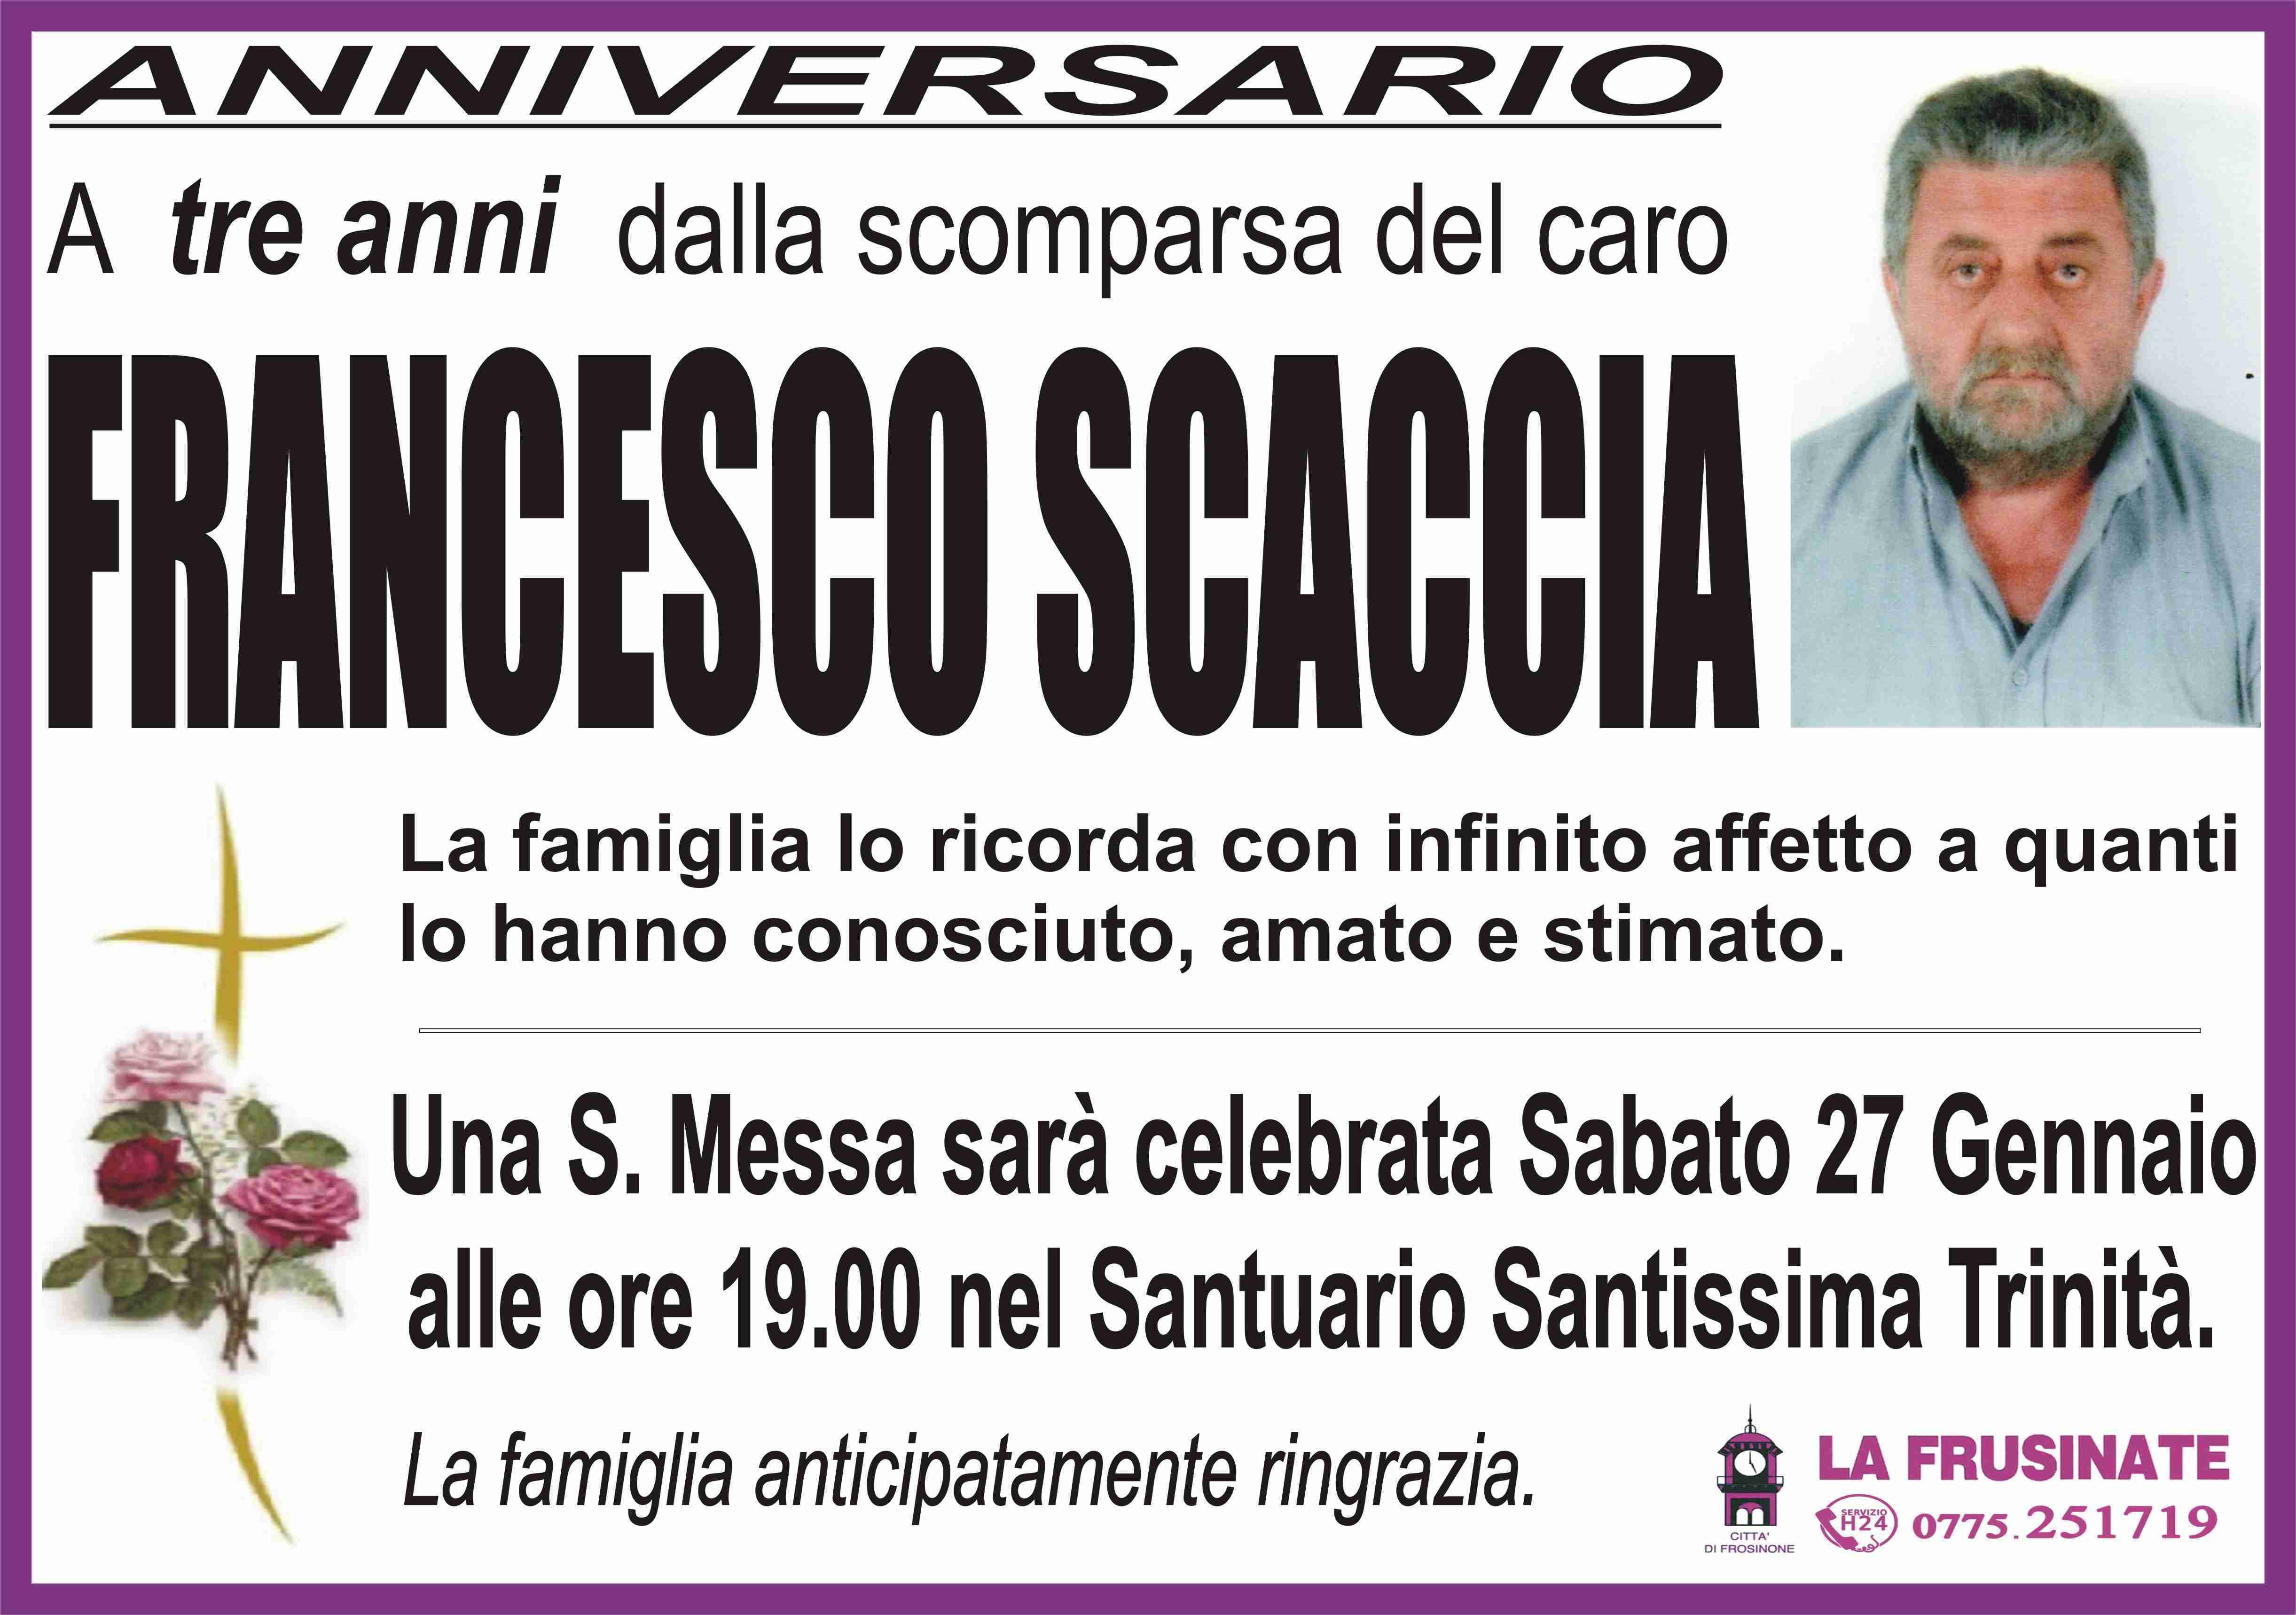 Francesco Scaccia